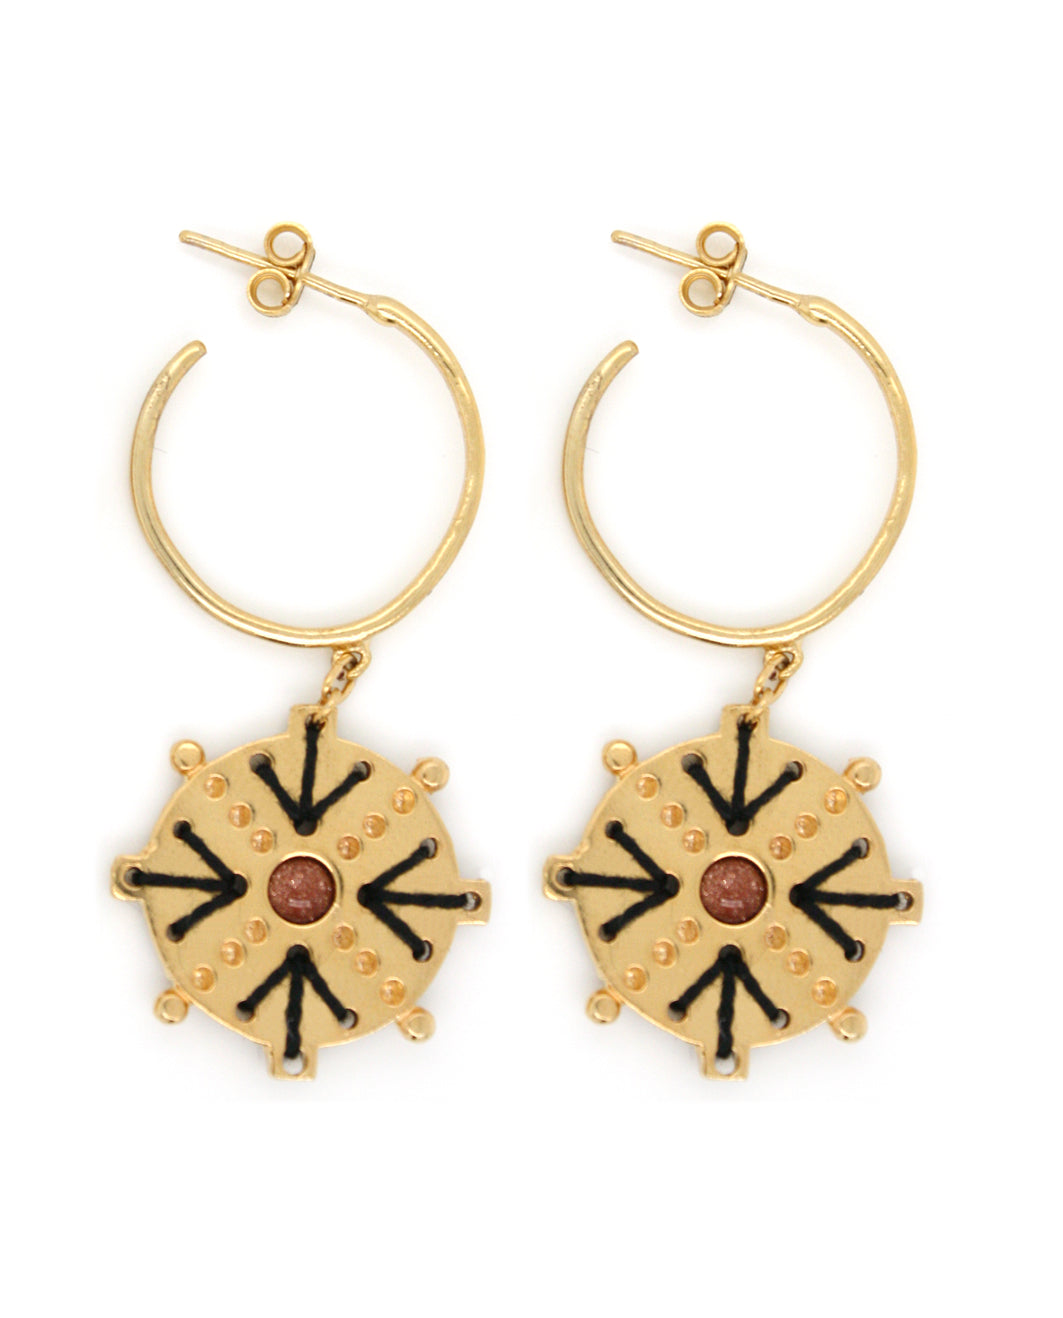 Anthos earrings